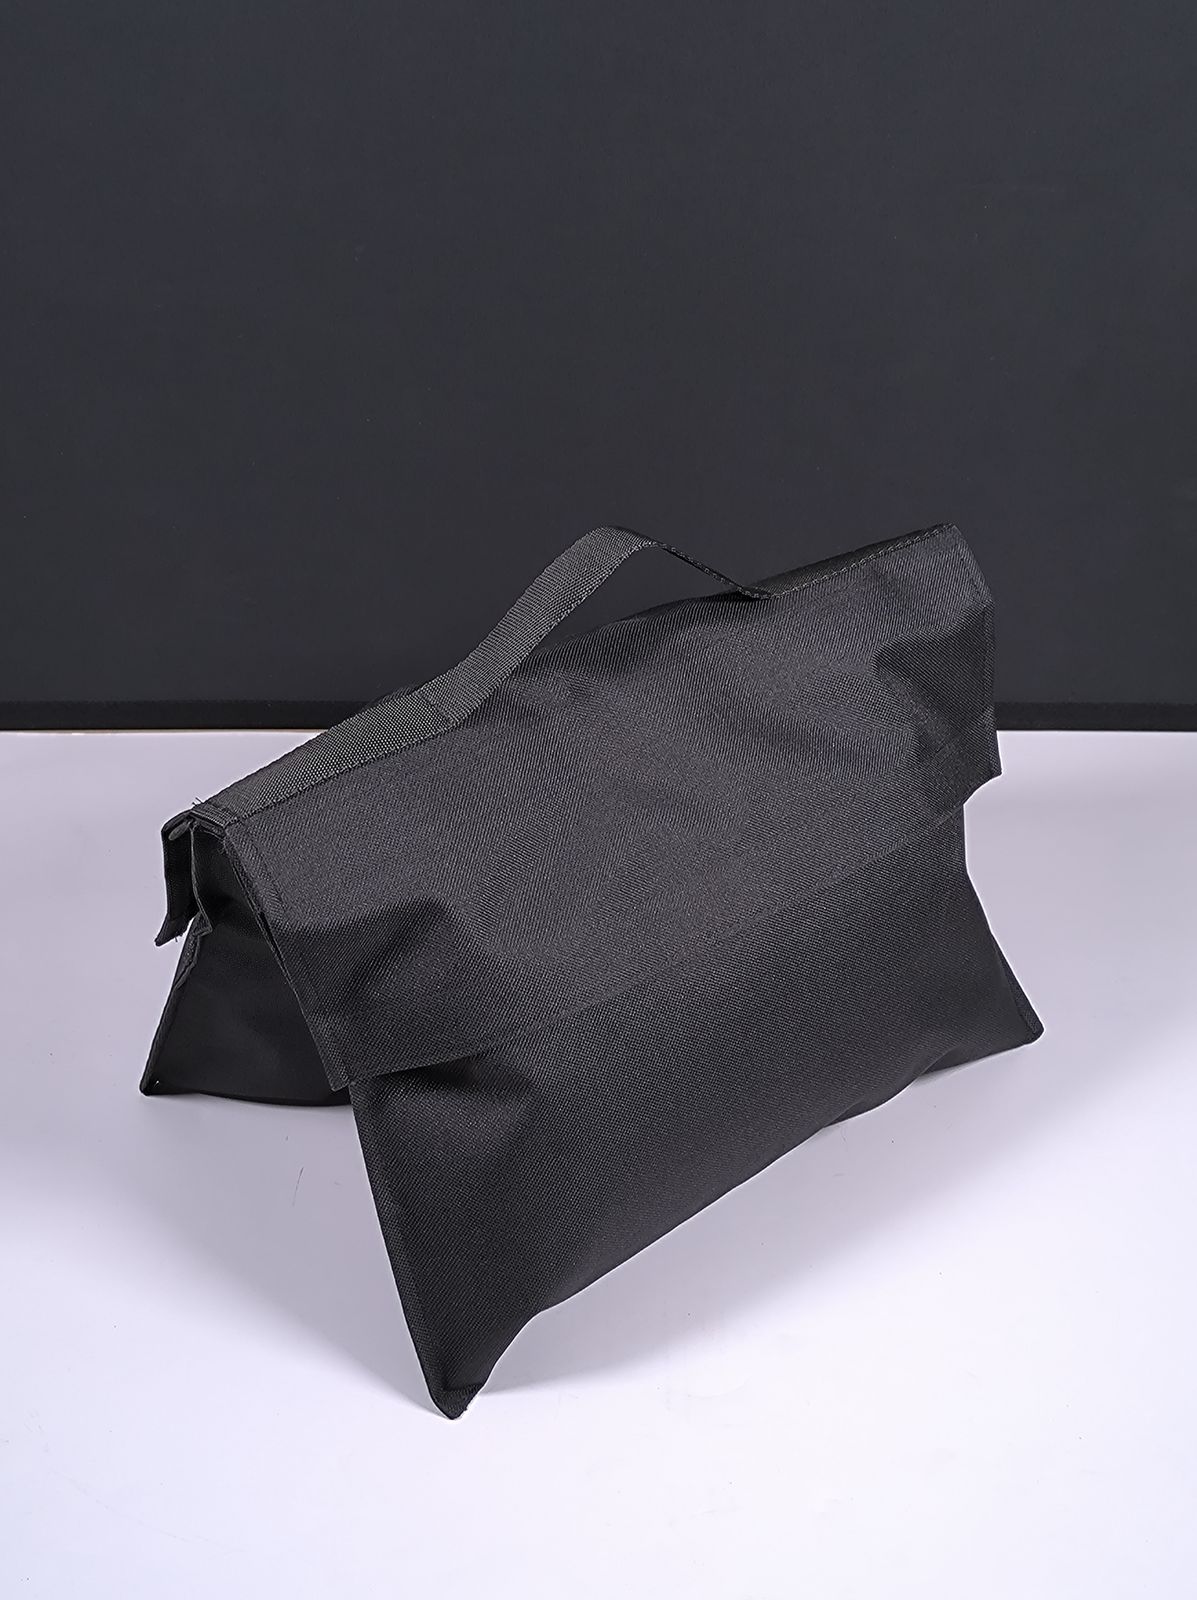 Мешок для песка Apode Sand Bag (до 7 кг) пустой